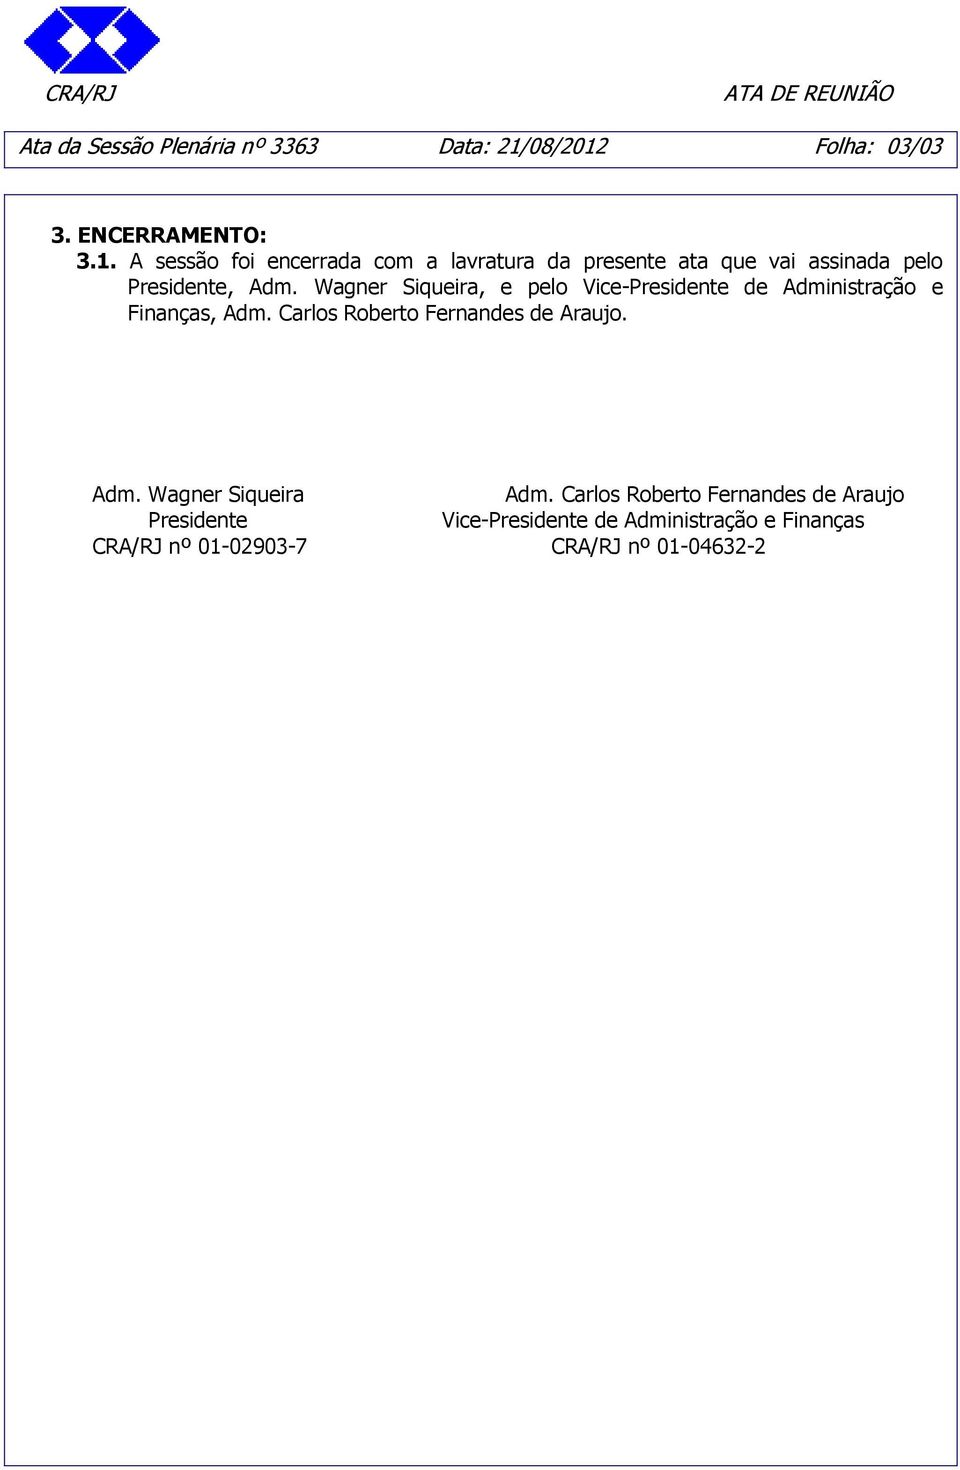 Wagner Siqueira, e pelo Vice-Presidente de Administração e Finanças, Adm. Carlos Roberto Fernandes de Araujo.